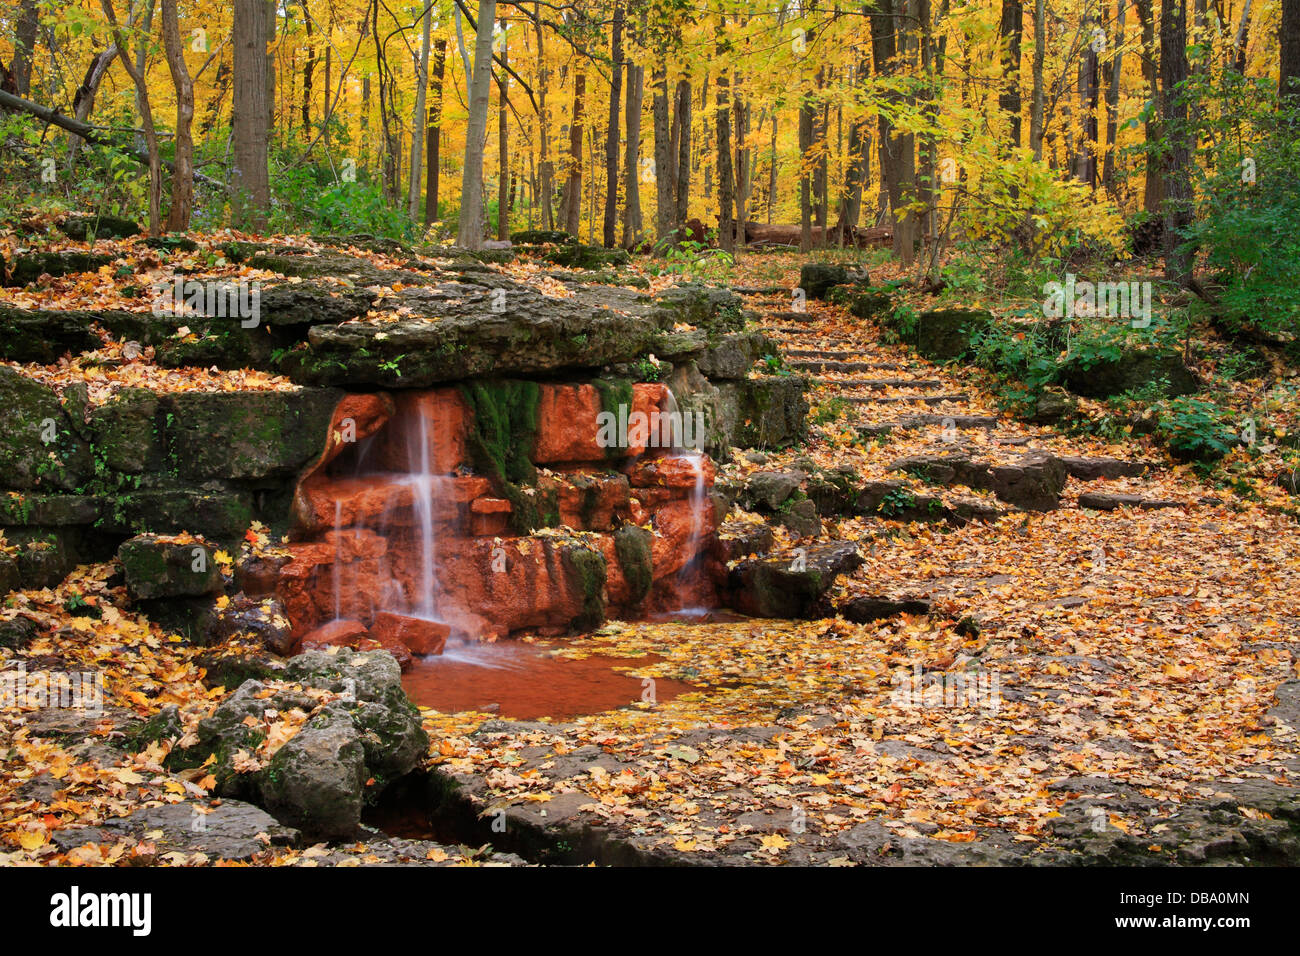 Un manantial natural con escalera de piedra y camino a través de un bosque en otoño, Glen Helen Nature Preserve Yellow Springs, Ohio, EE.UU. Foto de stock